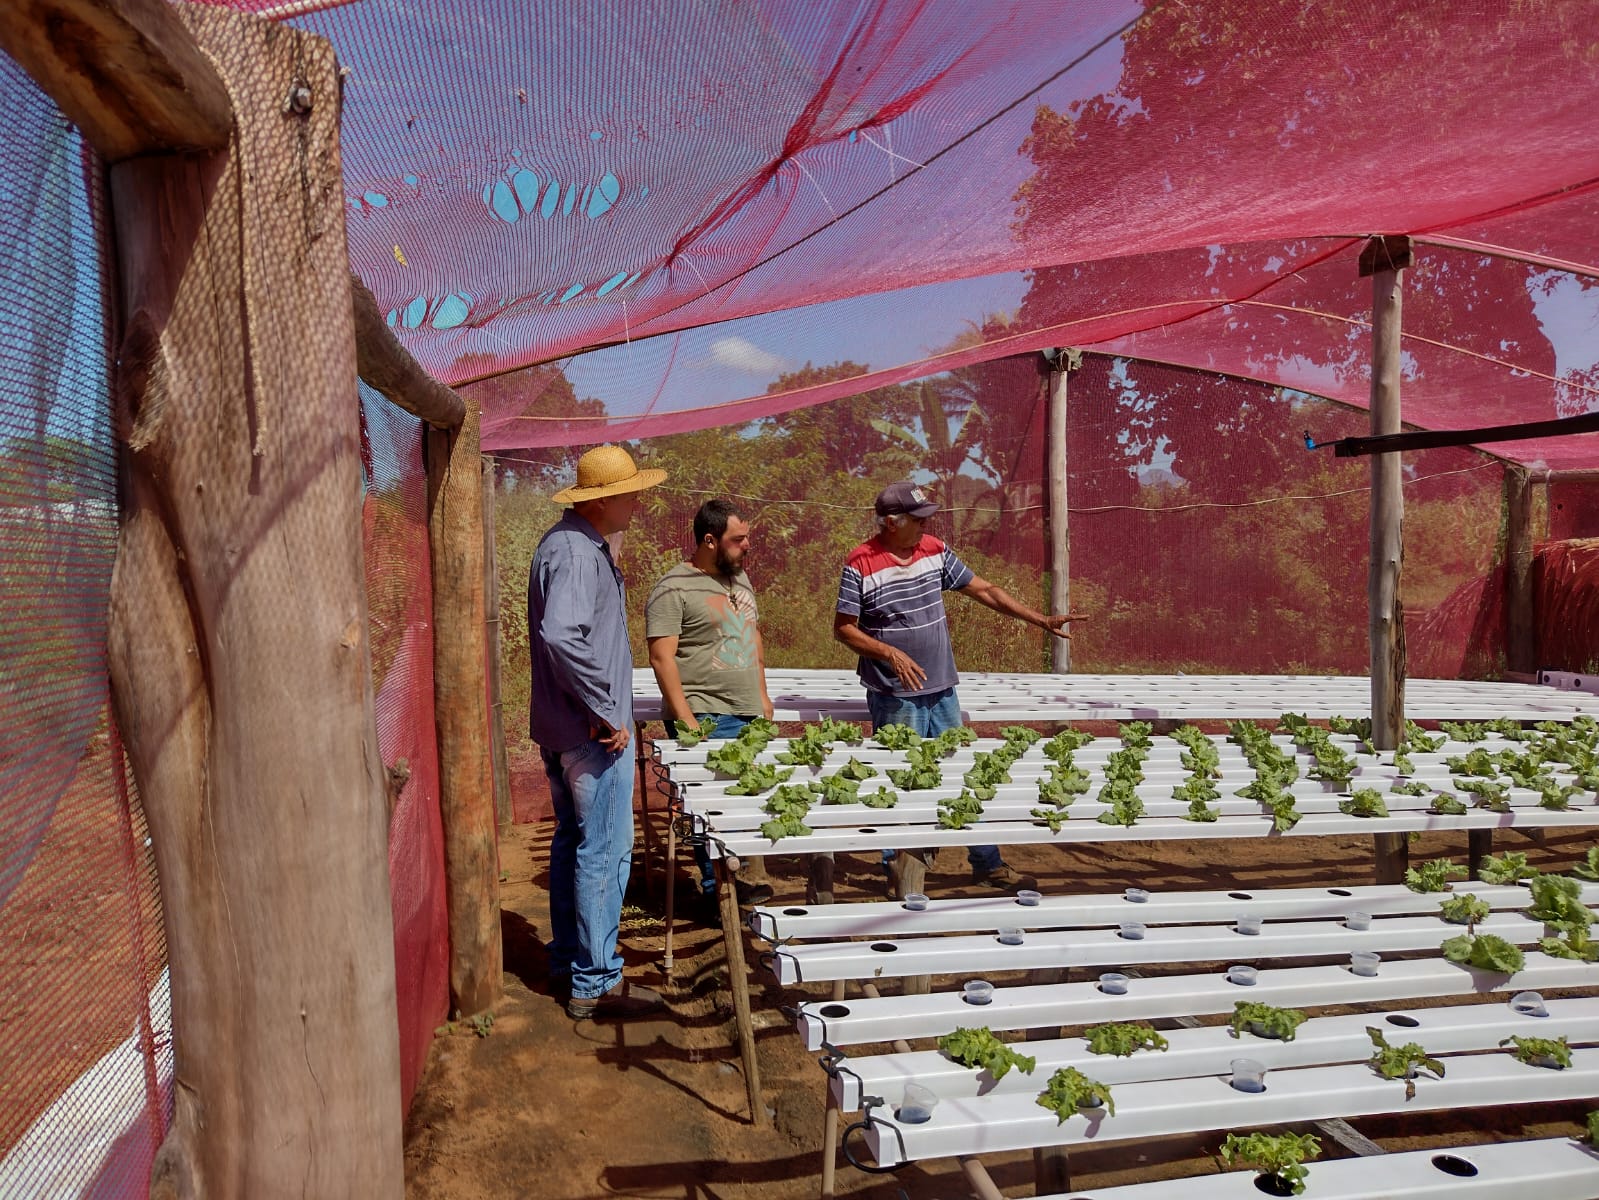 Entrega de mudas de hortaliças beneficia pequenos produtores em Rondonópolis